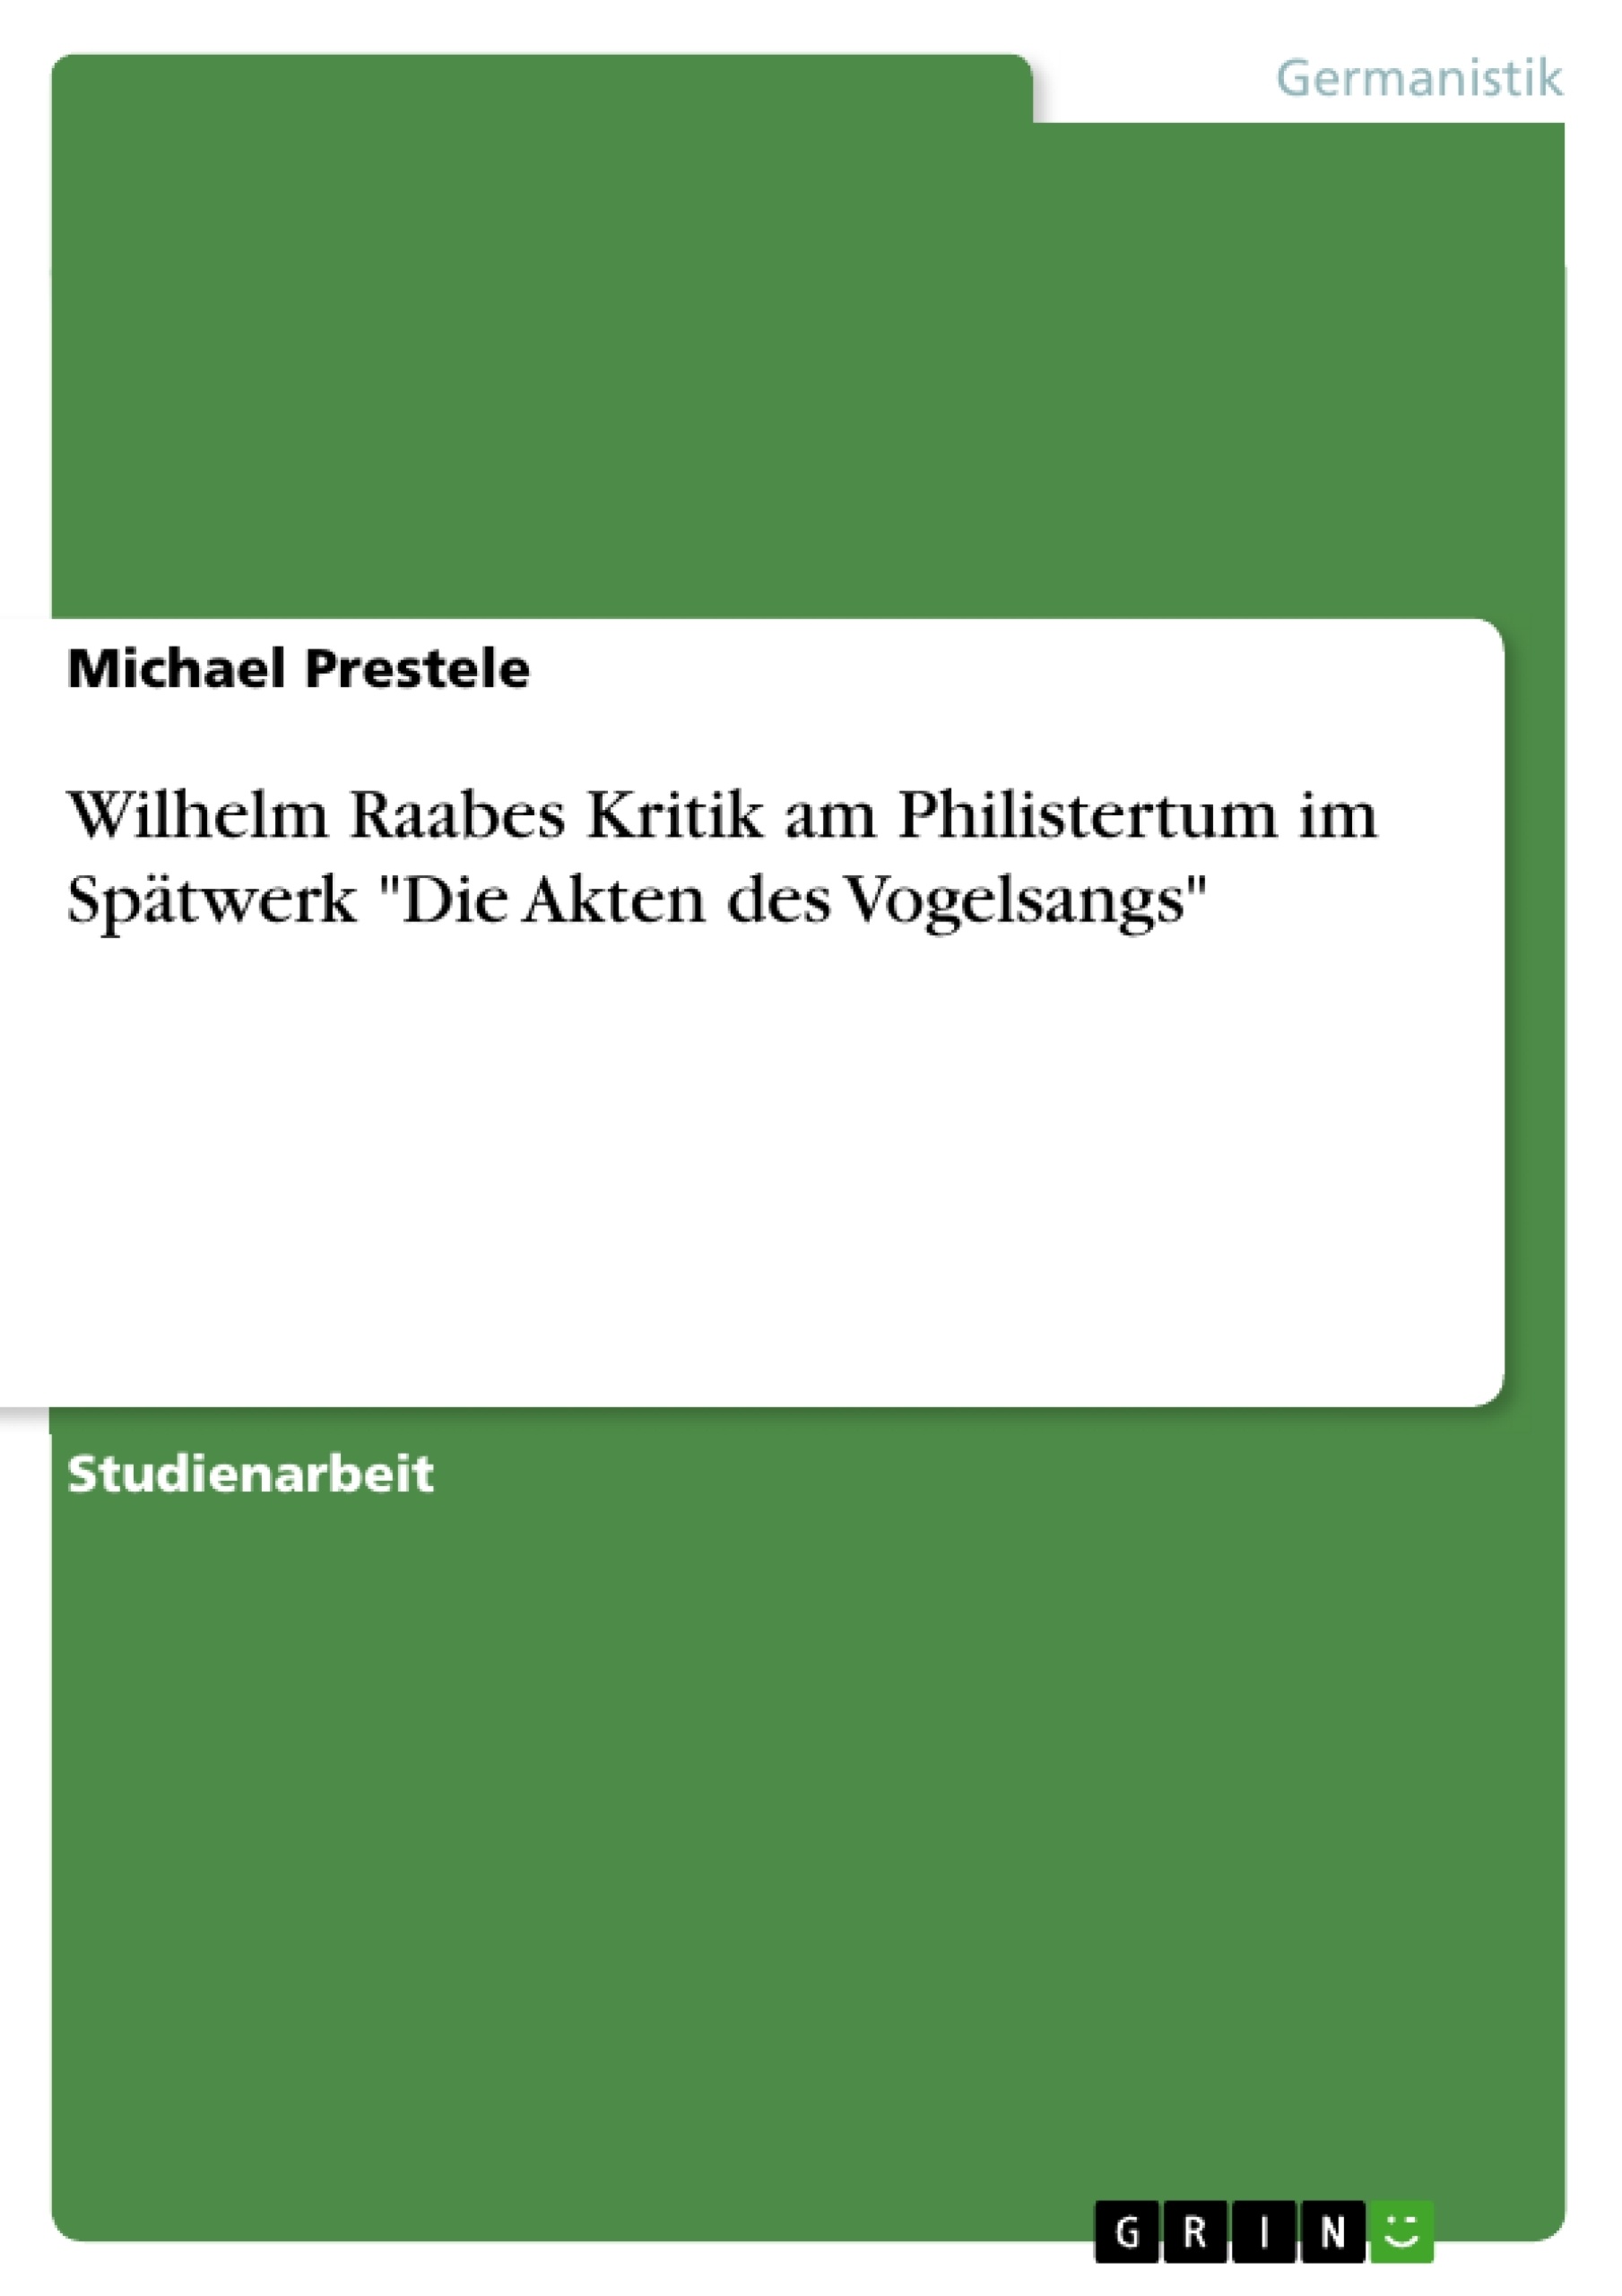 Titre: Wilhelm Raabes Kritik am Philistertum im Spätwerk "Die Akten des Vogelsangs"